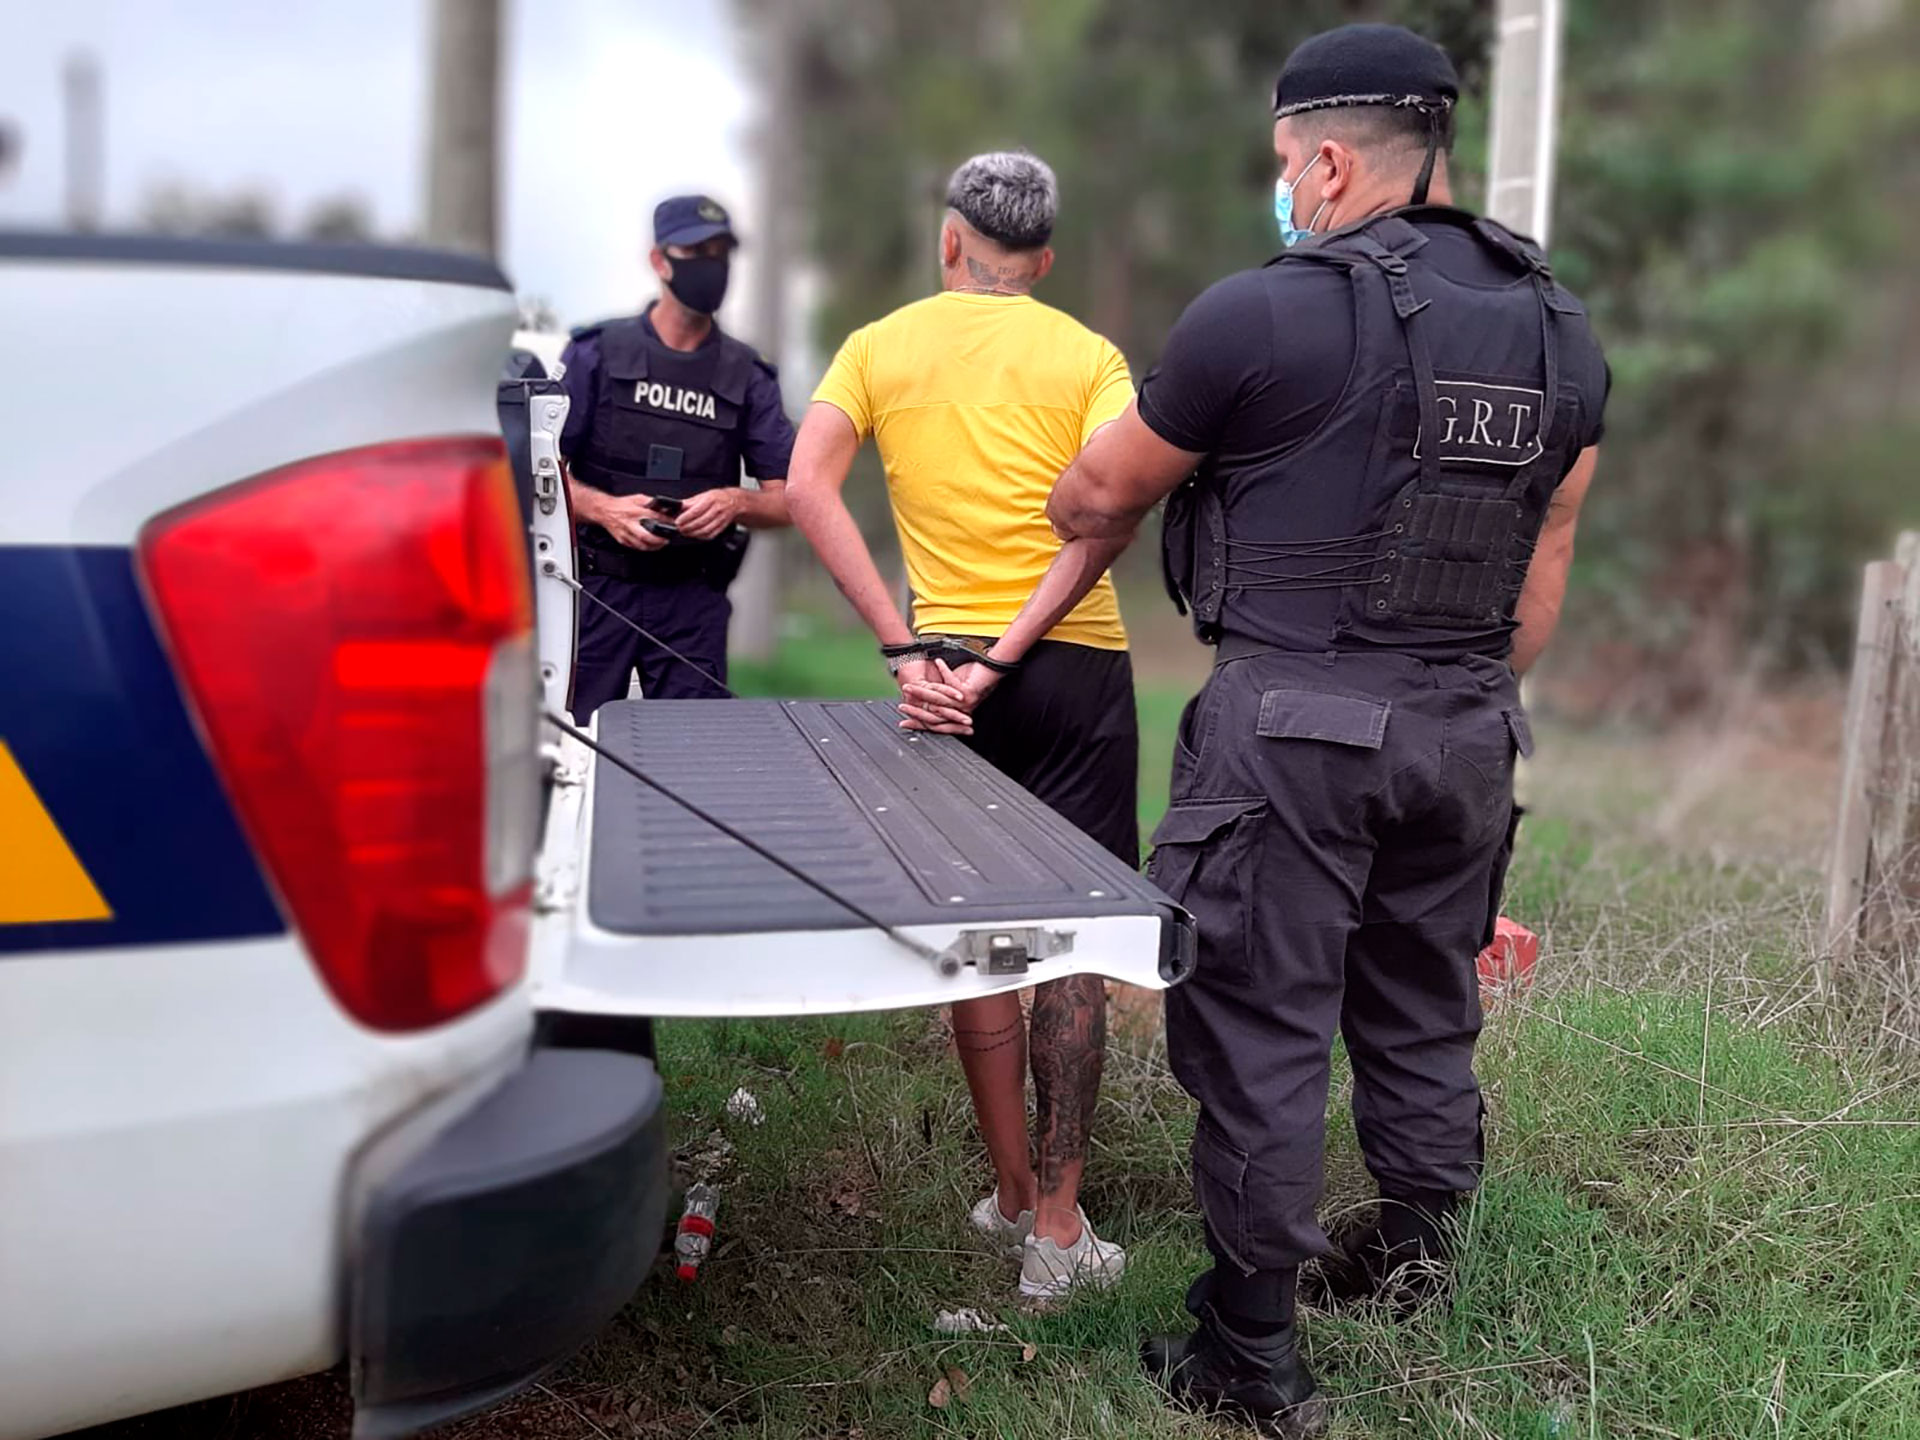 Nicolas Schiappacasse, futbolista de Peñarol, fue detenido con una pistola cuando iba camino a firmar la renovación de su contrato (Foto: Policía Caminera)